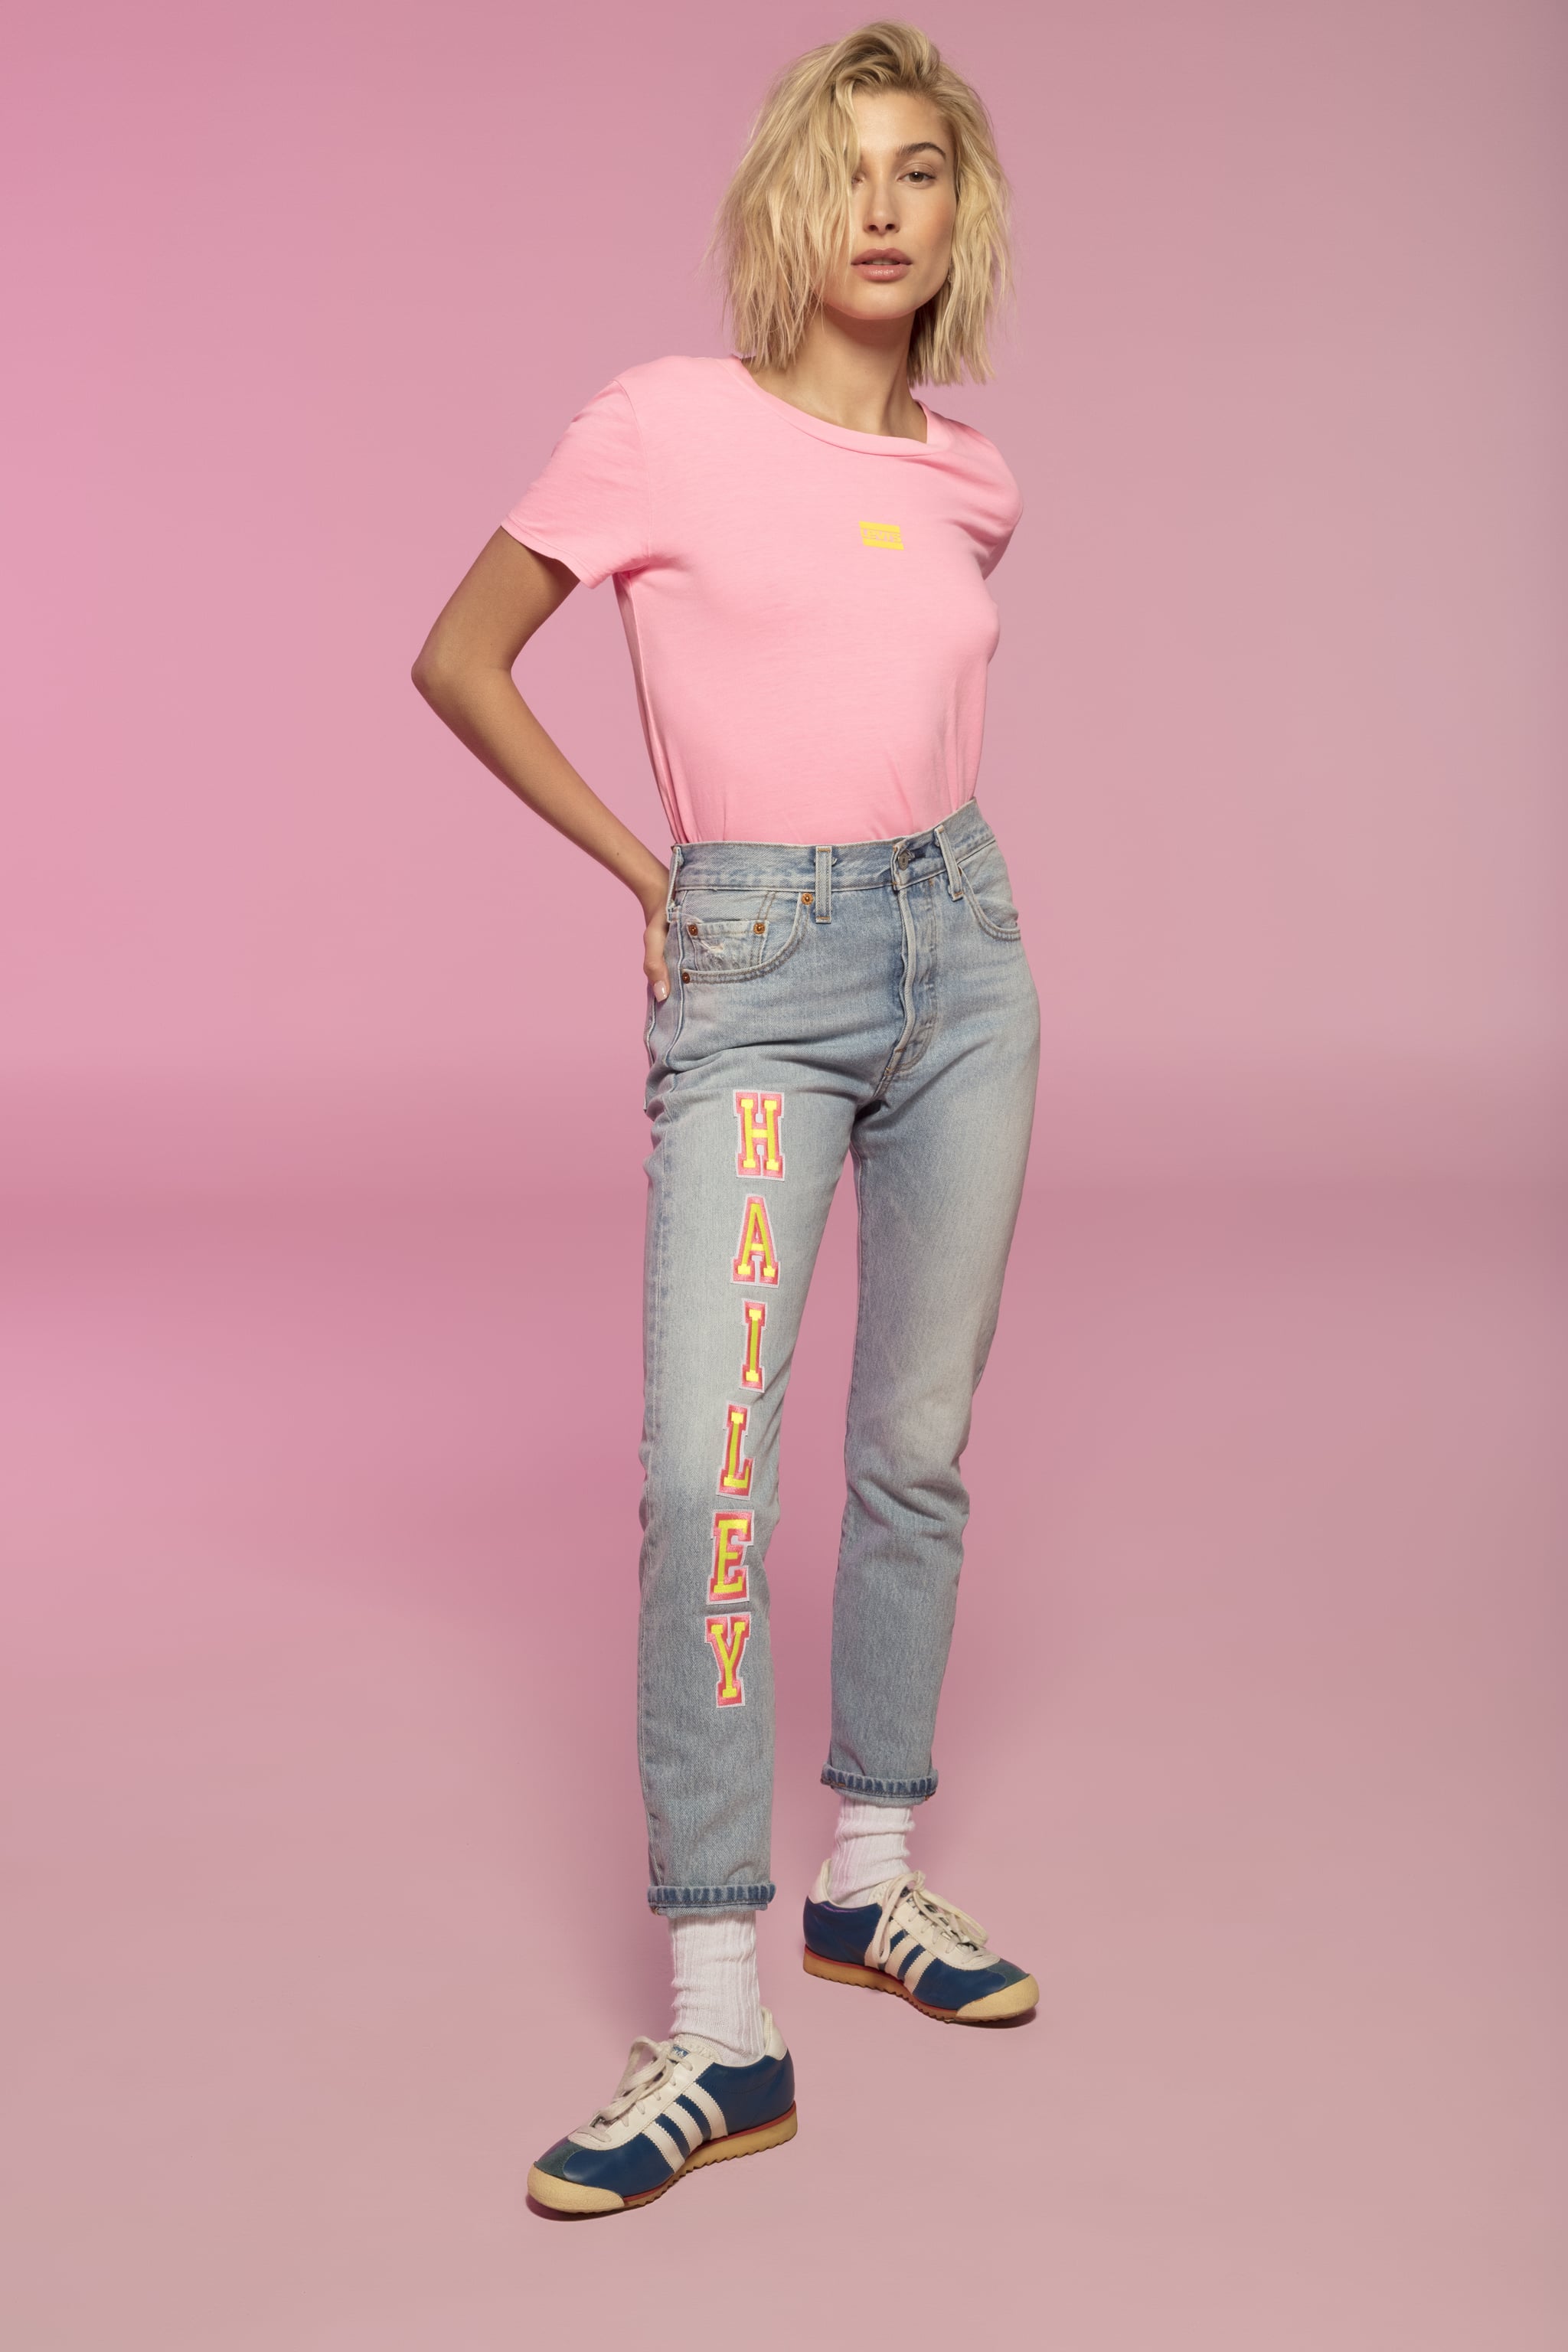 Hailey Baldwin Levi's Jeans Collaboration 2019 | POPSUGAR Fashion